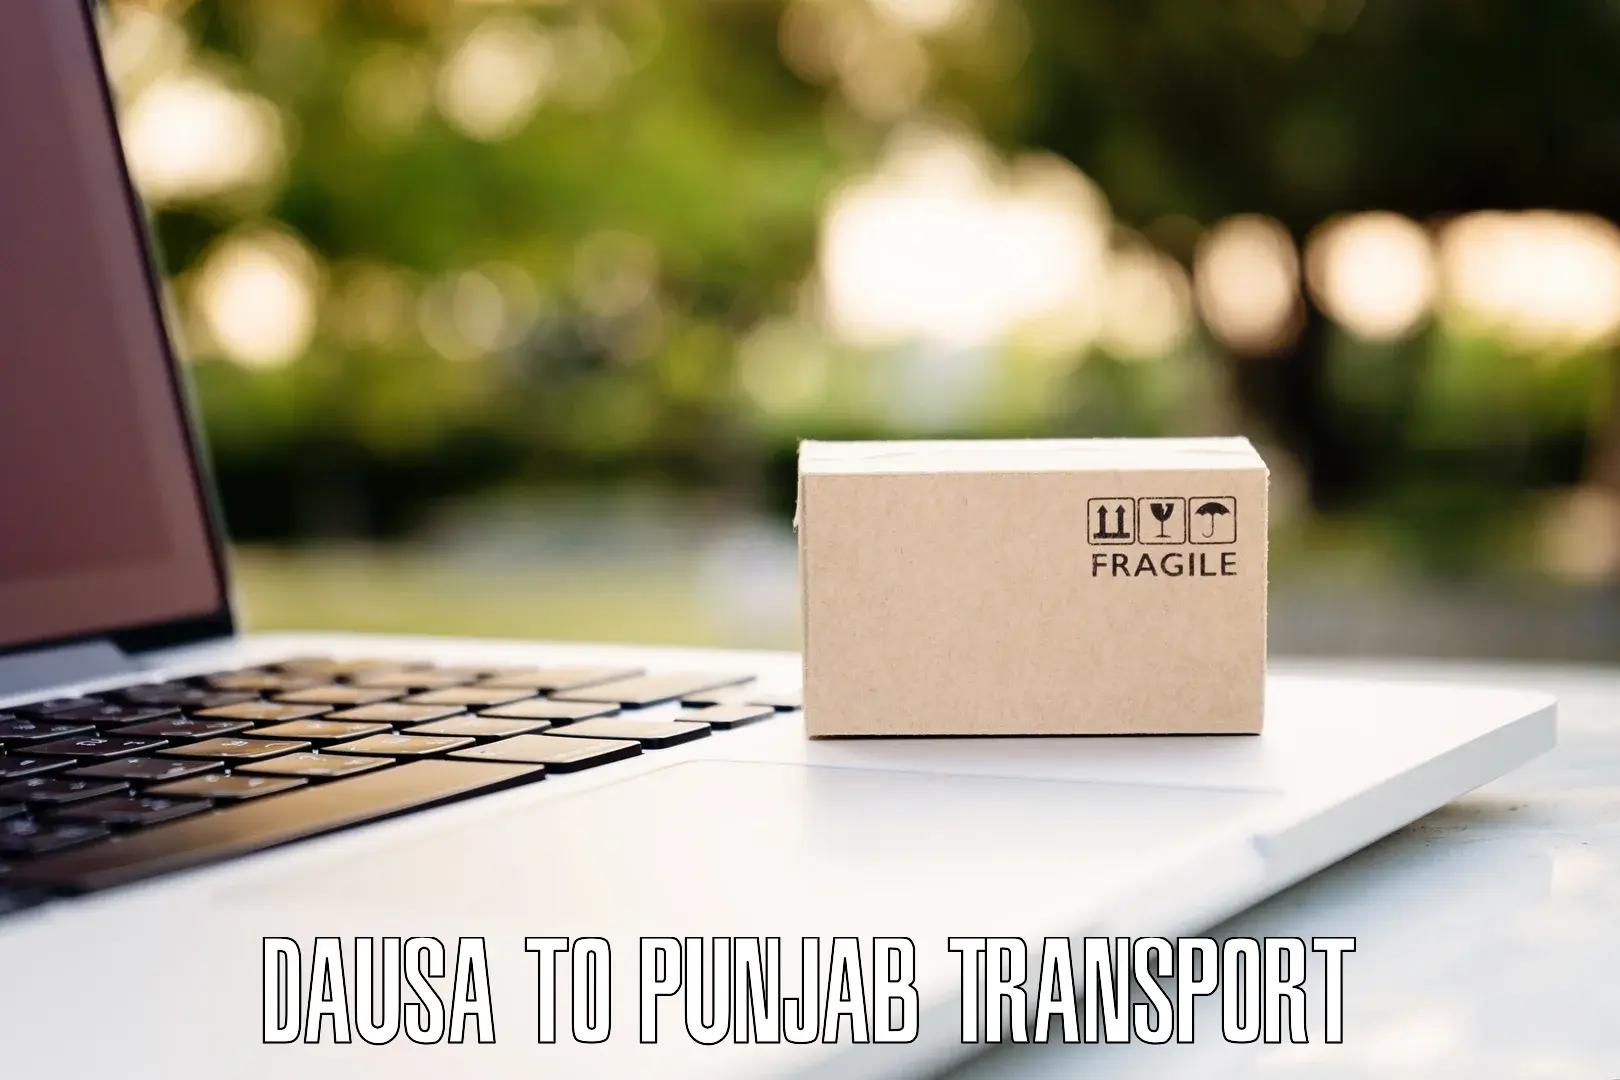 Luggage transport services Dausa to Punjab